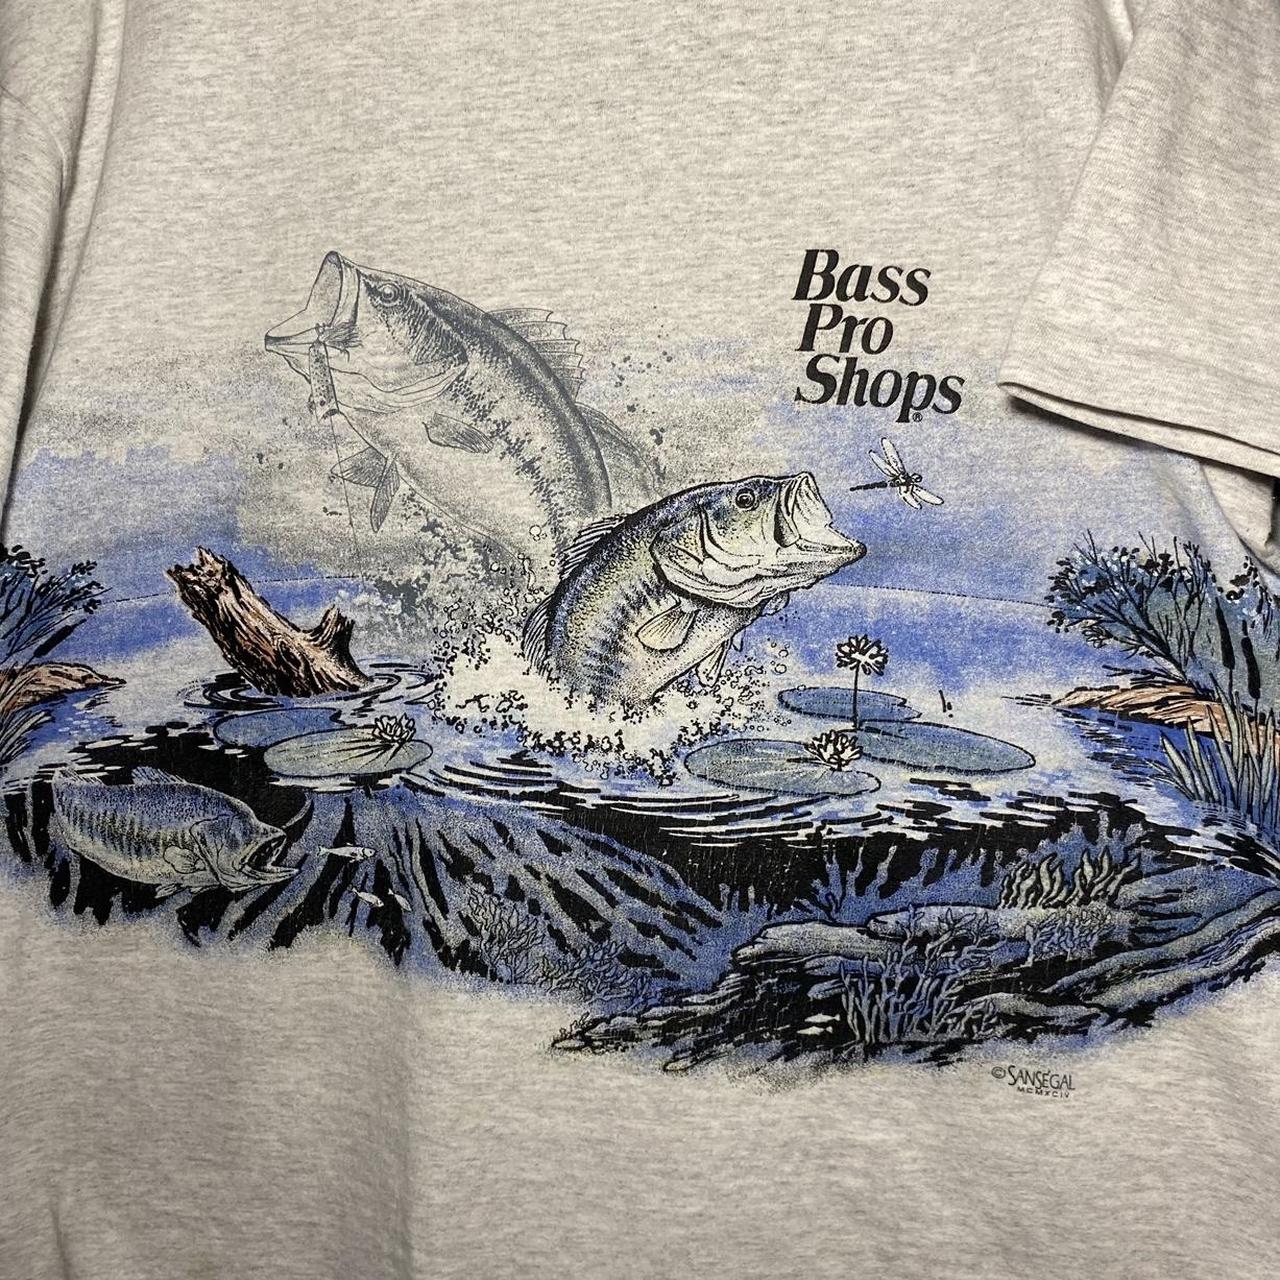 Bass Pro Shop San Segal T-Shirt, Grey Under Water